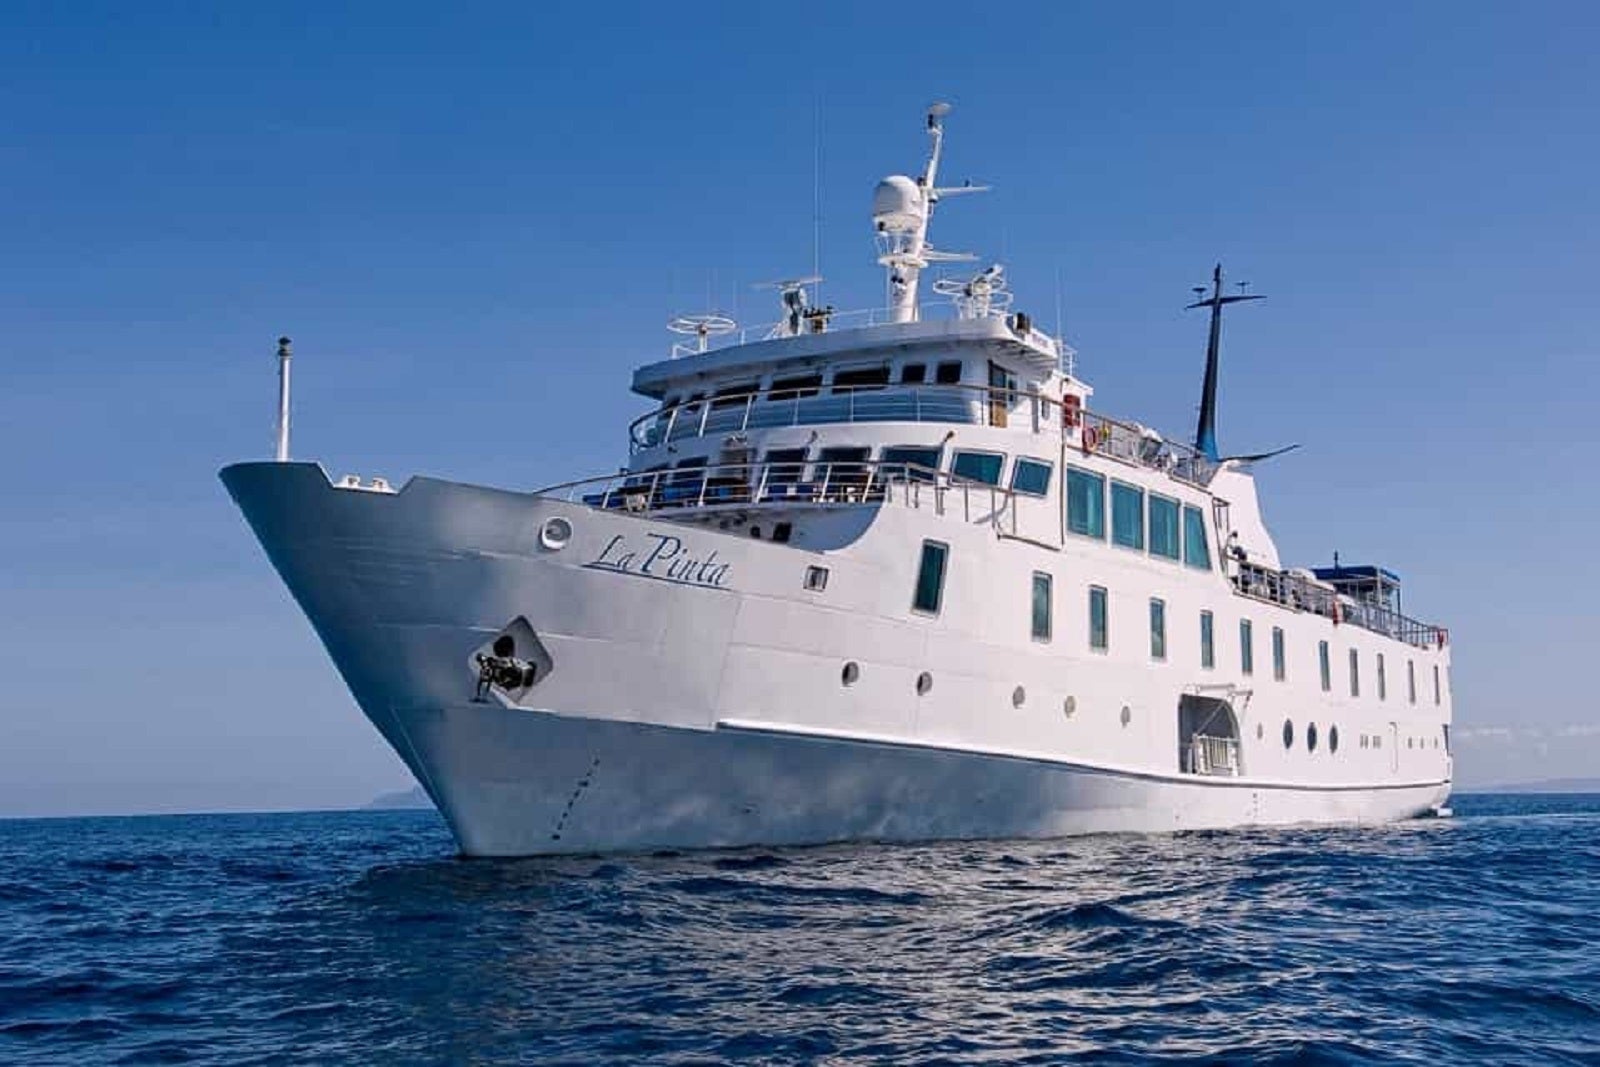 galapagos islands boat cruises